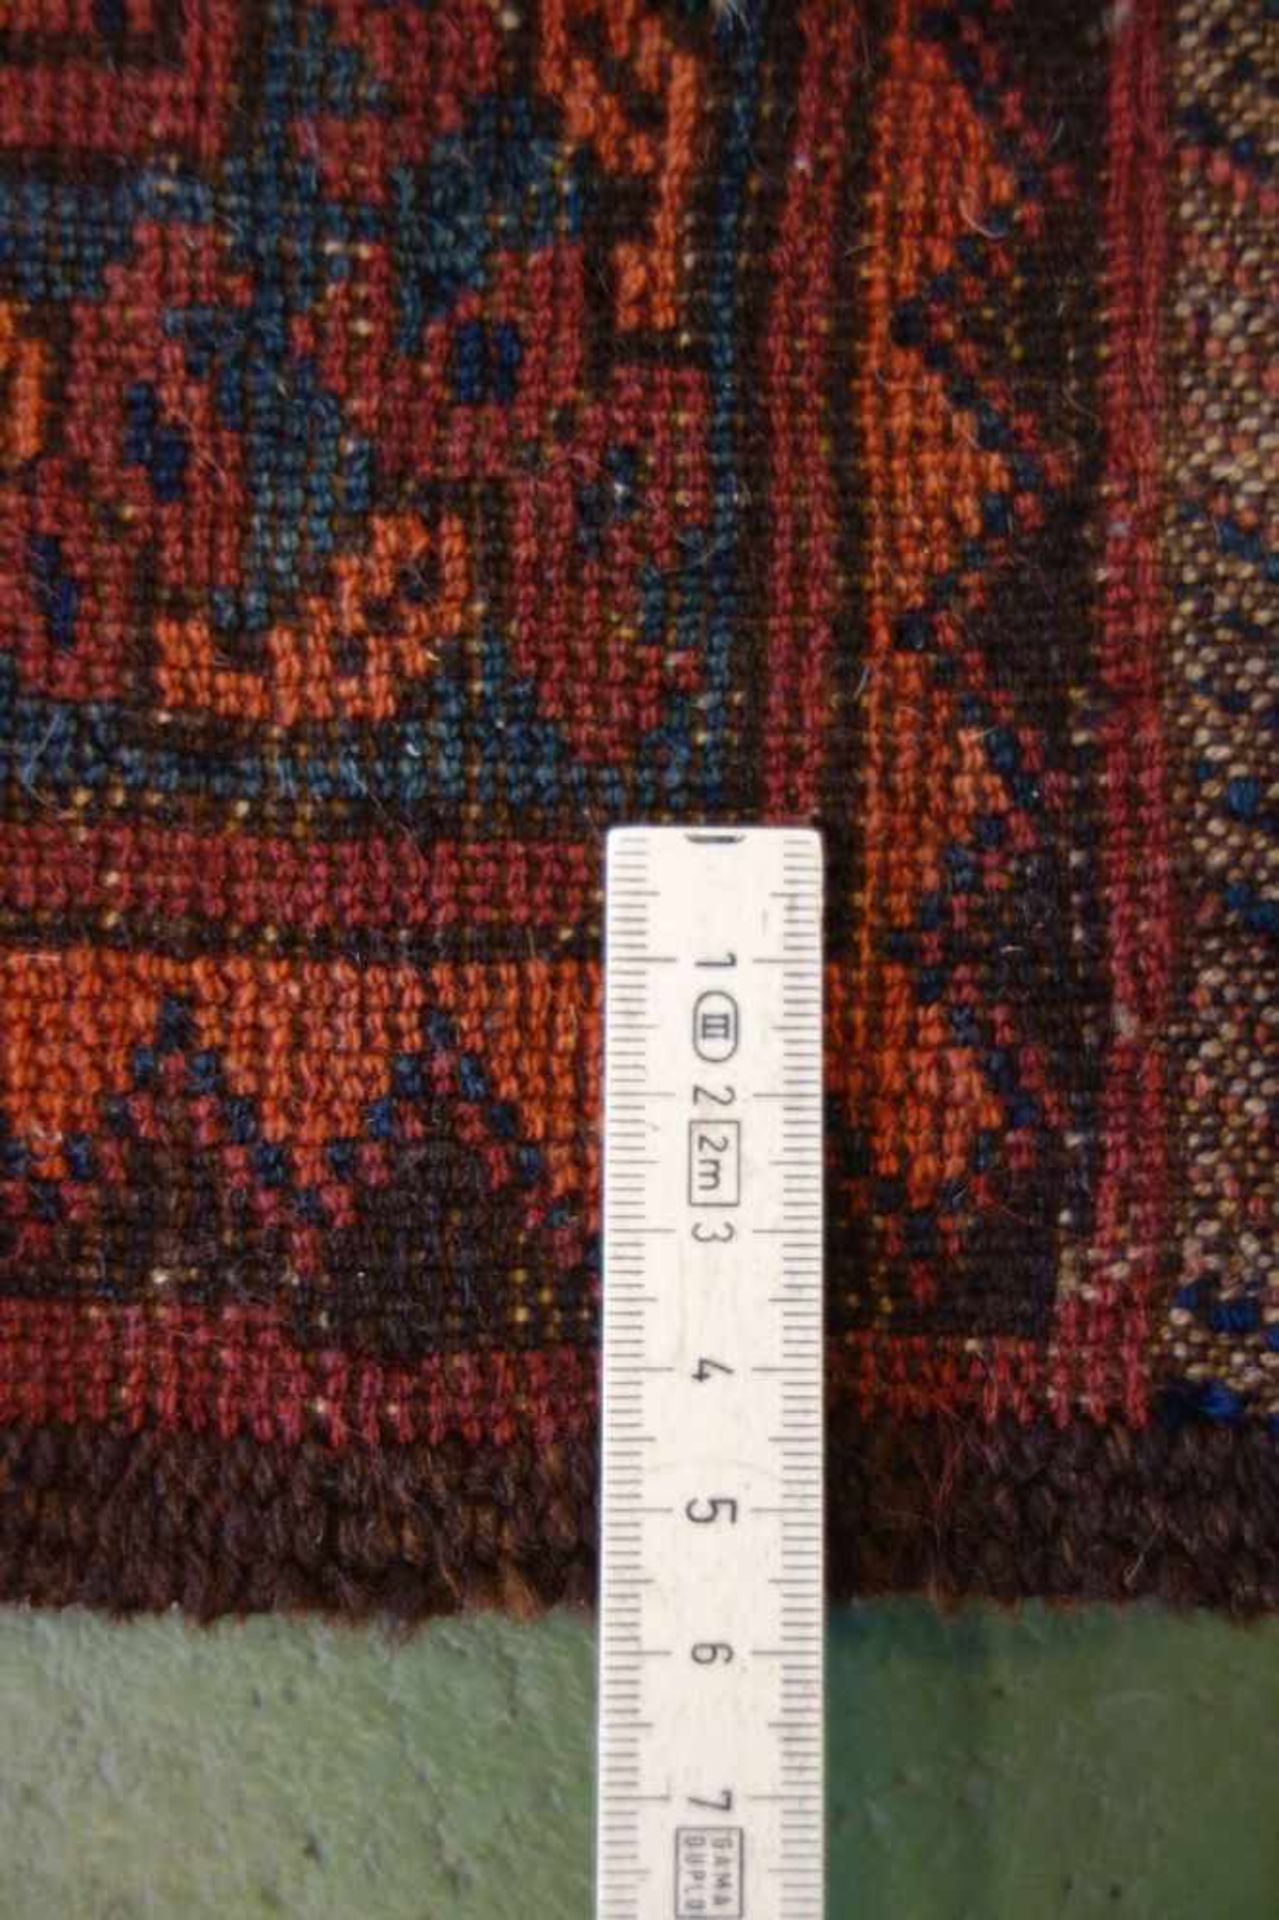 BESCHIR (ERSARI BESCHIR) / KLEINER TEPPICH / carpet / Zentralasien oder Südturkestan, wahrscheinlich - Image 3 of 15